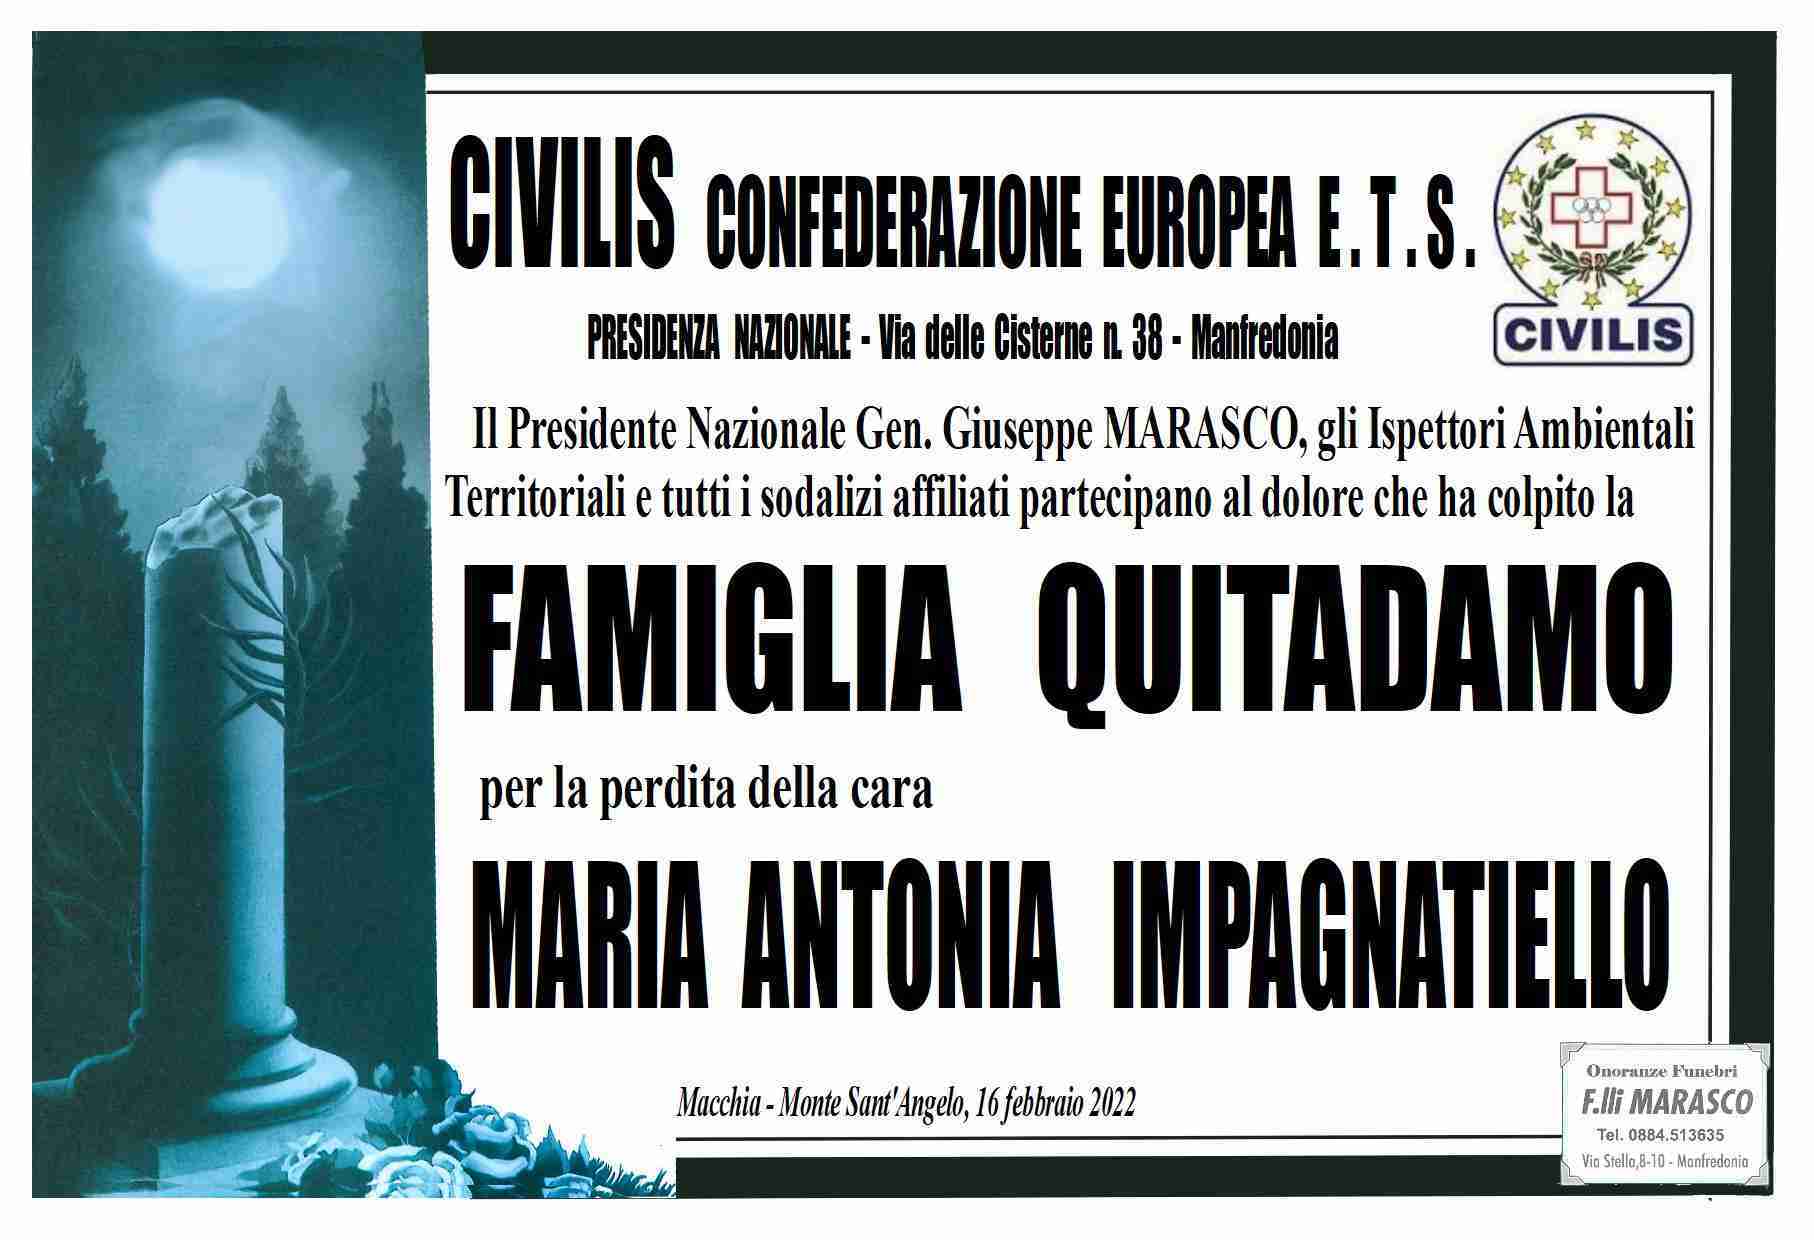 Maria Antonia Impagnatiello